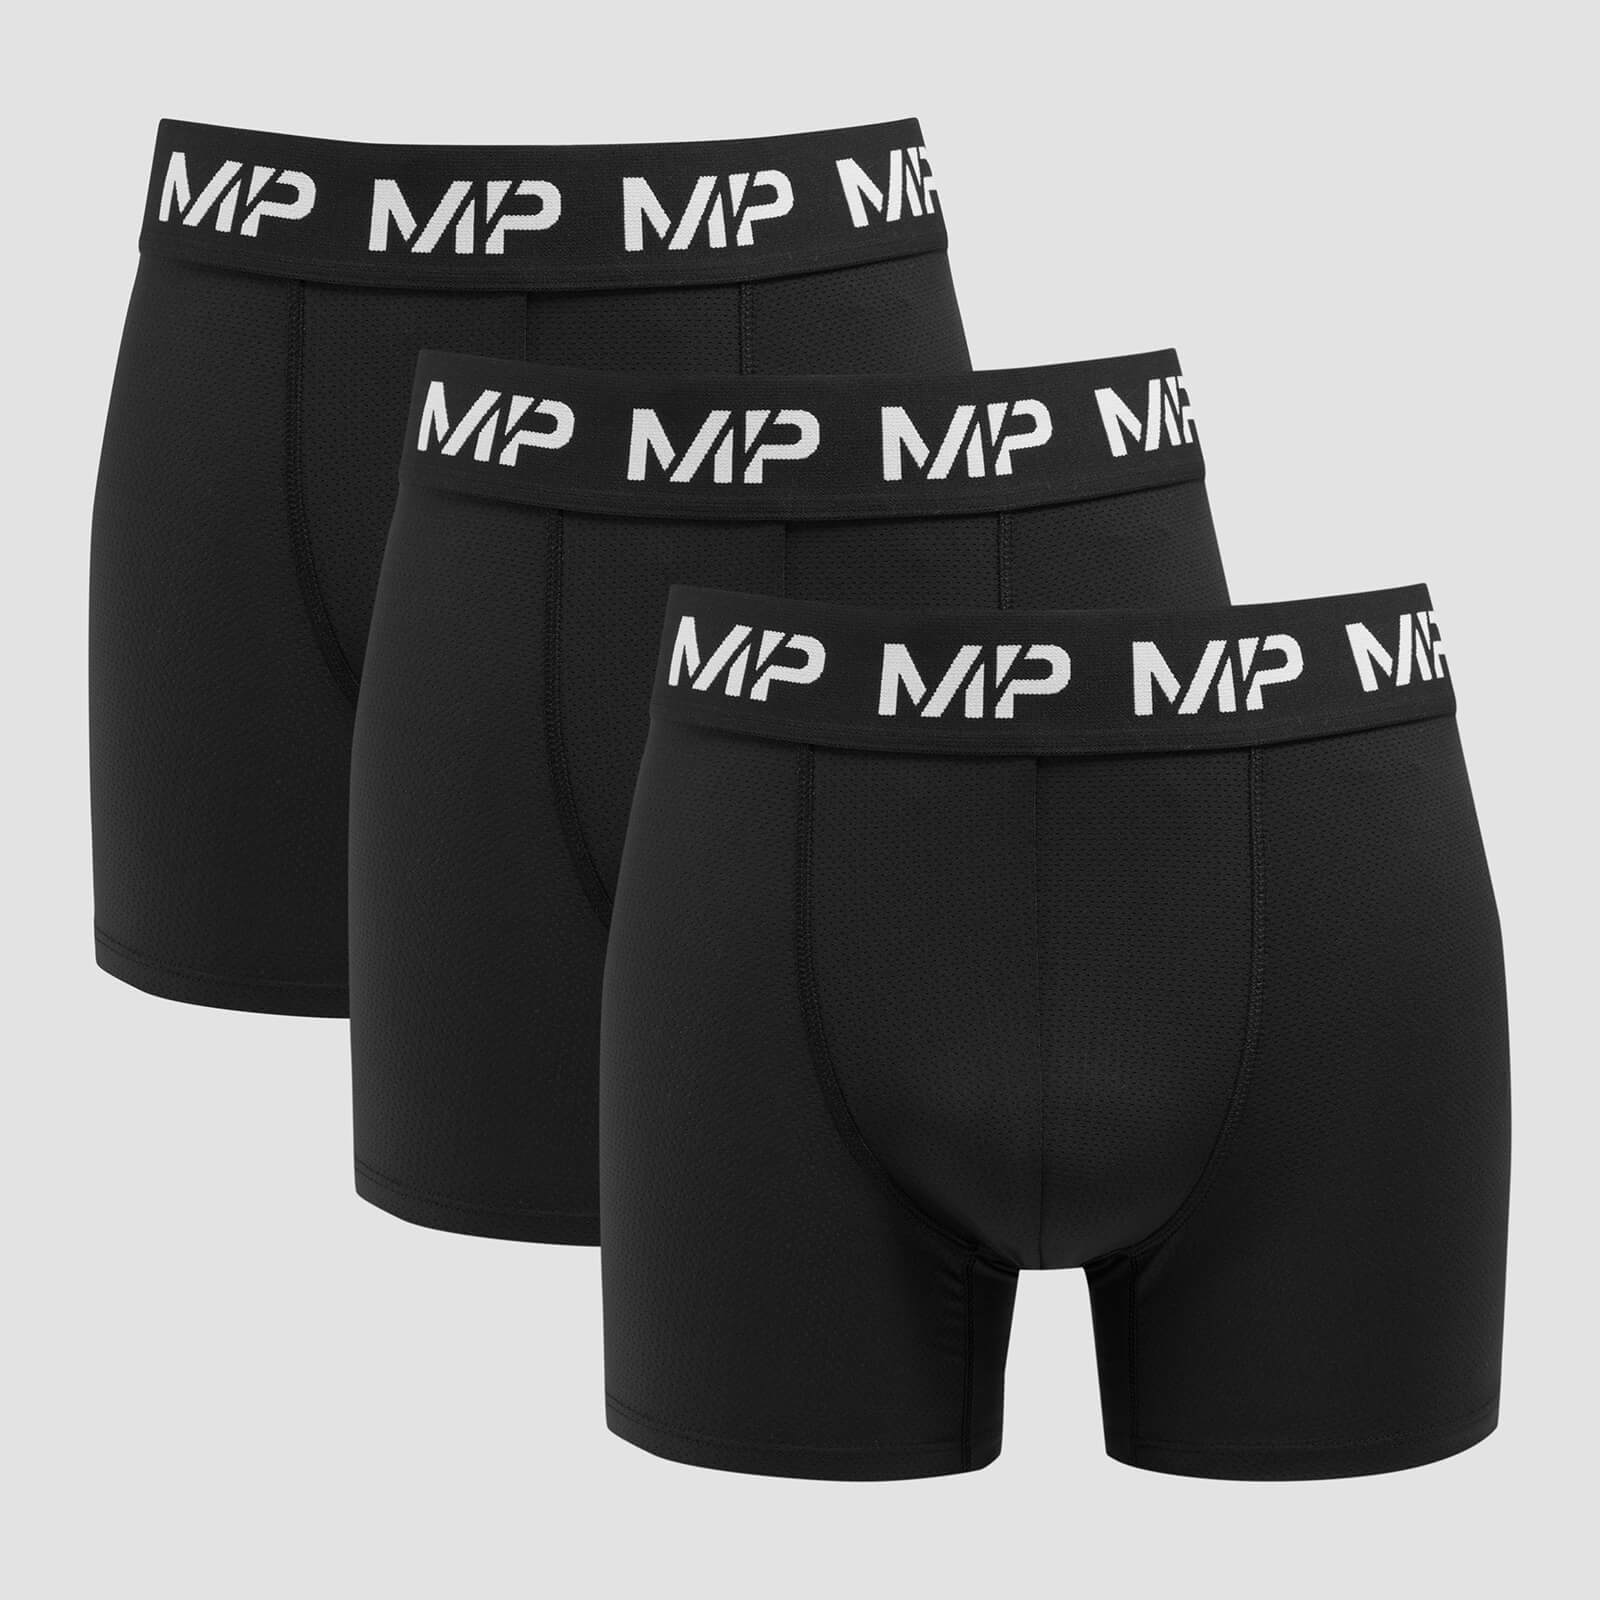 Мъжки боксерки MP (3 бр. в опаковка) — черни - XS